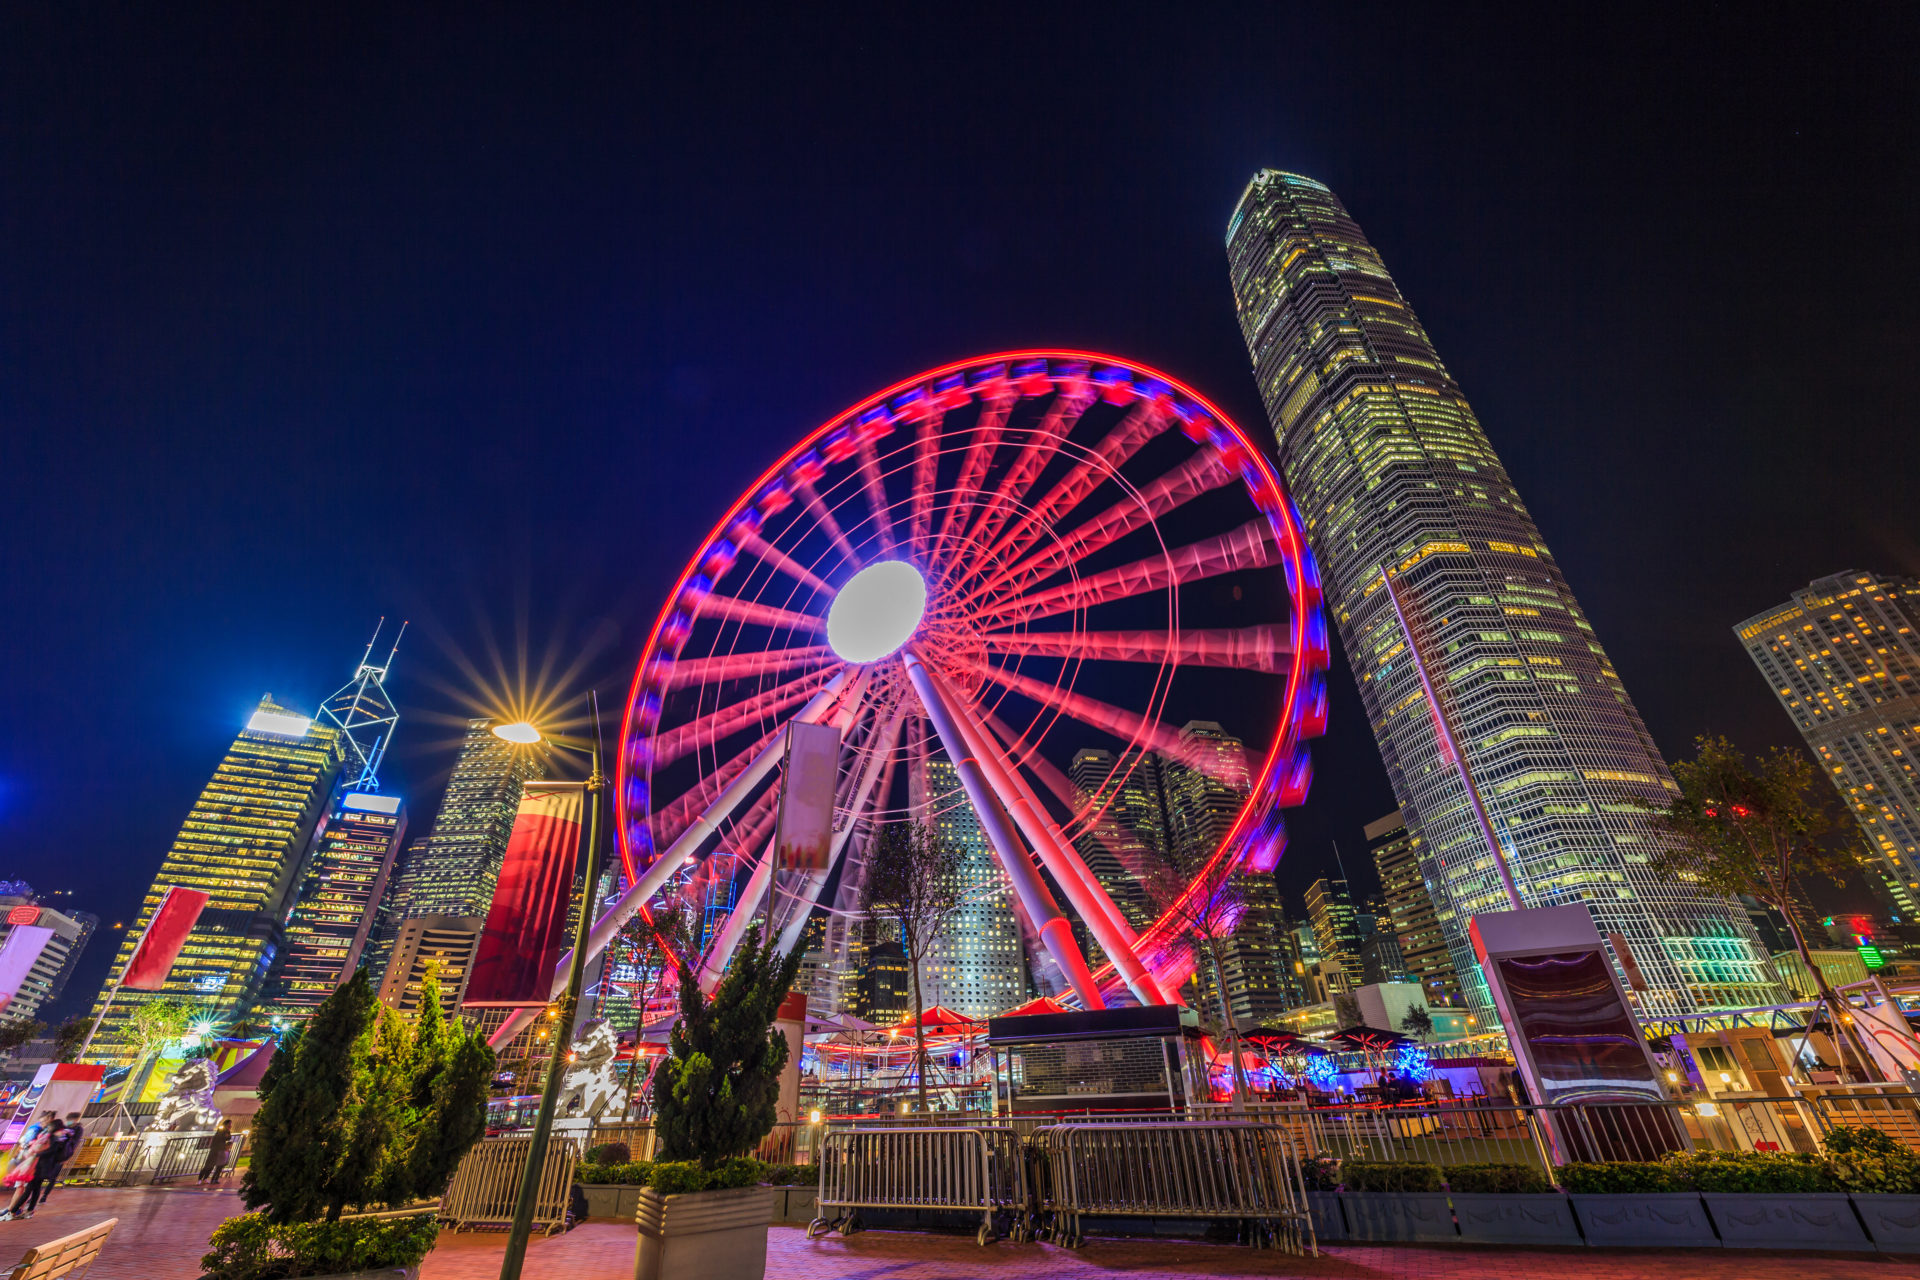 Ferris wheel in Hong Kong, Hong Kong Observation Wheel.